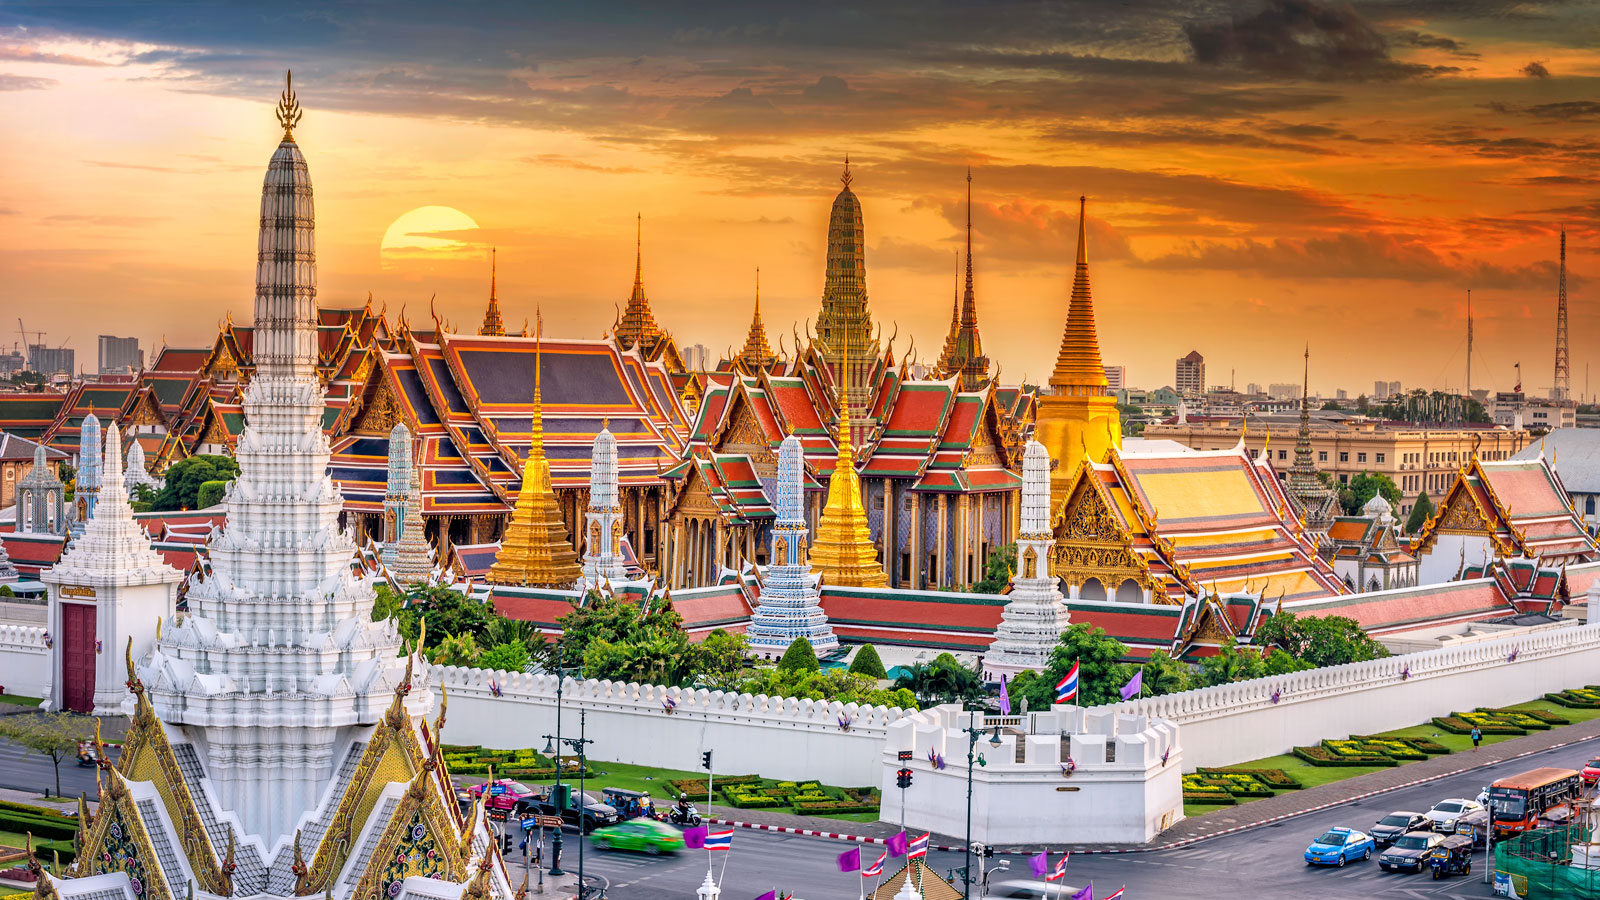 7 Destinasi Wisata Thailand, Sudah Pernah Mampir?